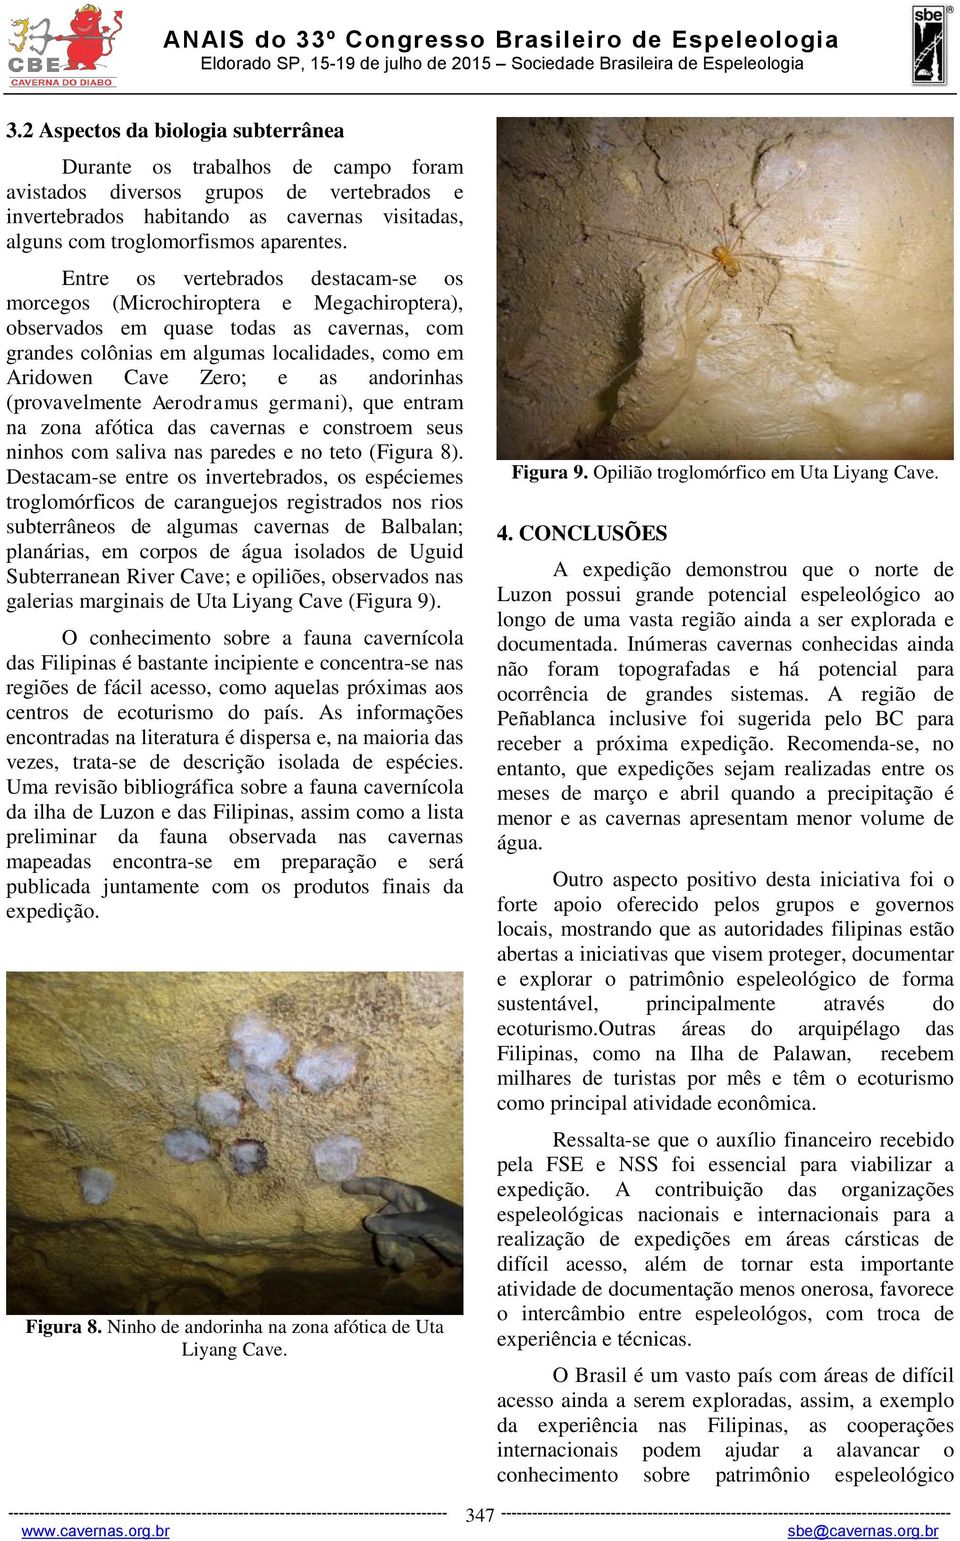 andorinhas (provavelmente Aerodramus germani), que entram na zona afótica das cavernas e constroem seus ninhos com saliva nas paredes e no teto (Figura 8).